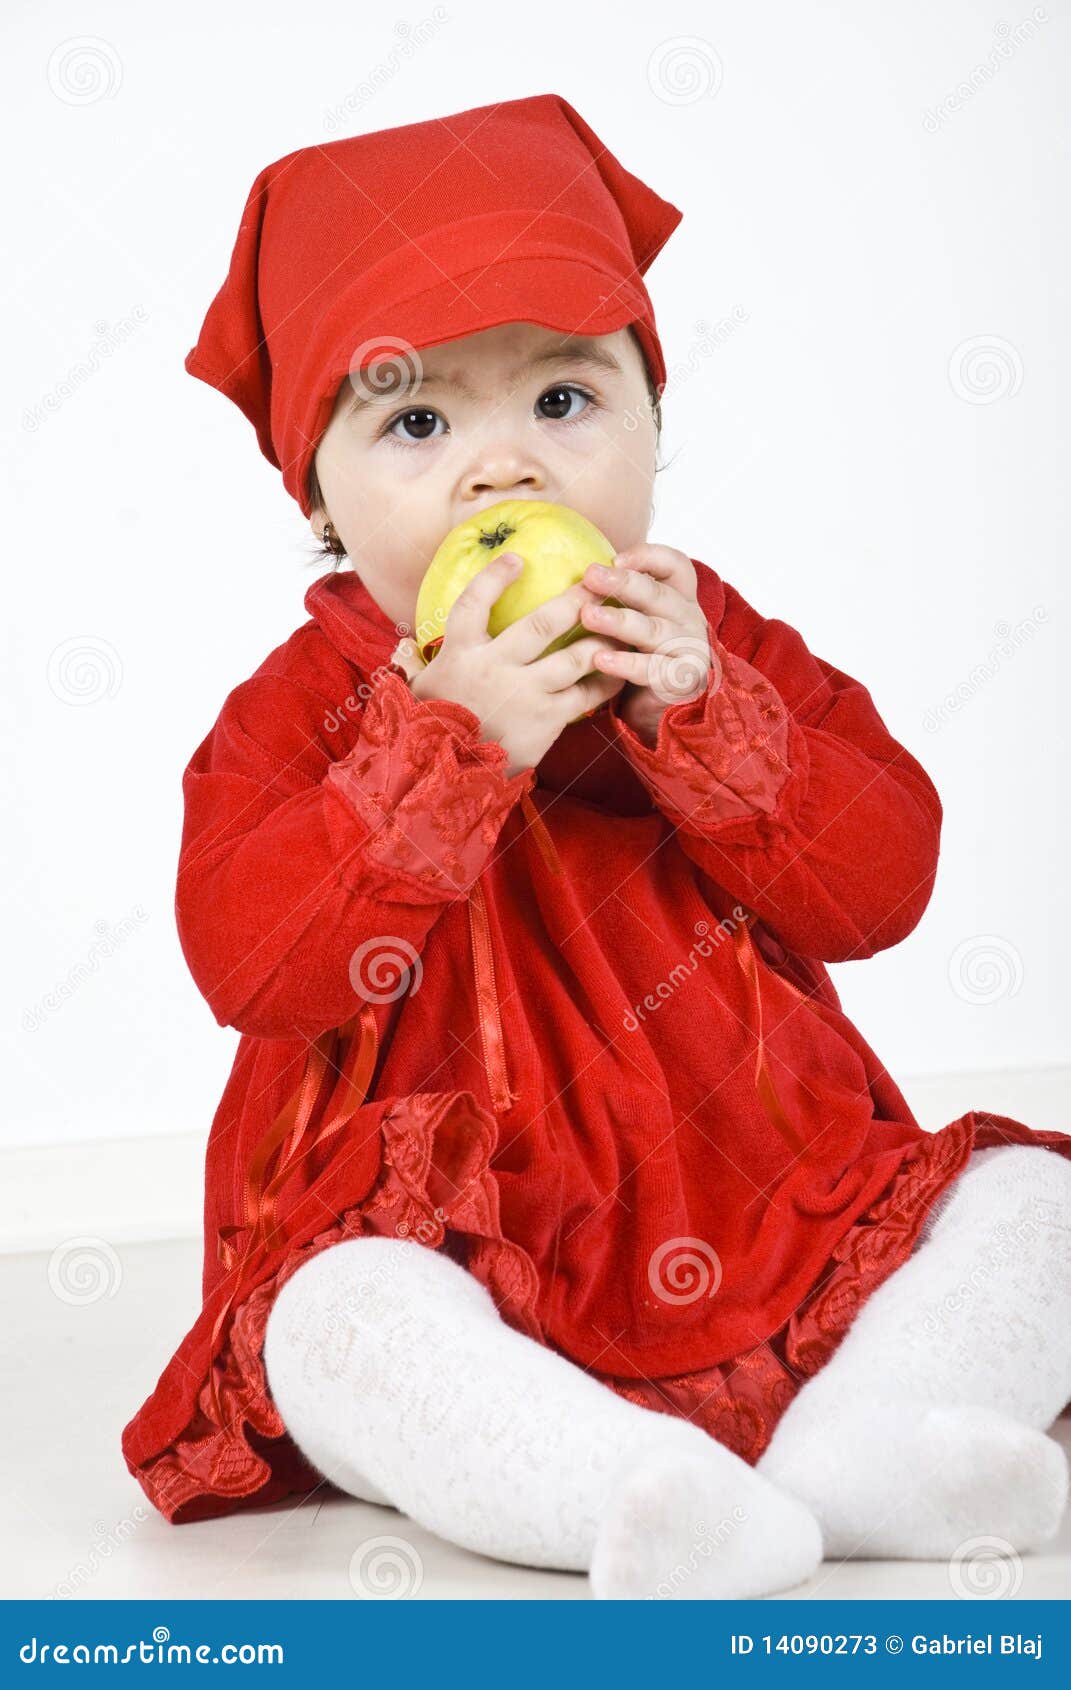 Bambino che mangia mela. La ragazza del bambino che si siede sul pavimento si è vestita in vestiti rossi e nel cibo della mela verde. Controlli egualmente i <a href="http://www.dreamstime.com/children--rcollection13056-resi828293">bambini</a>